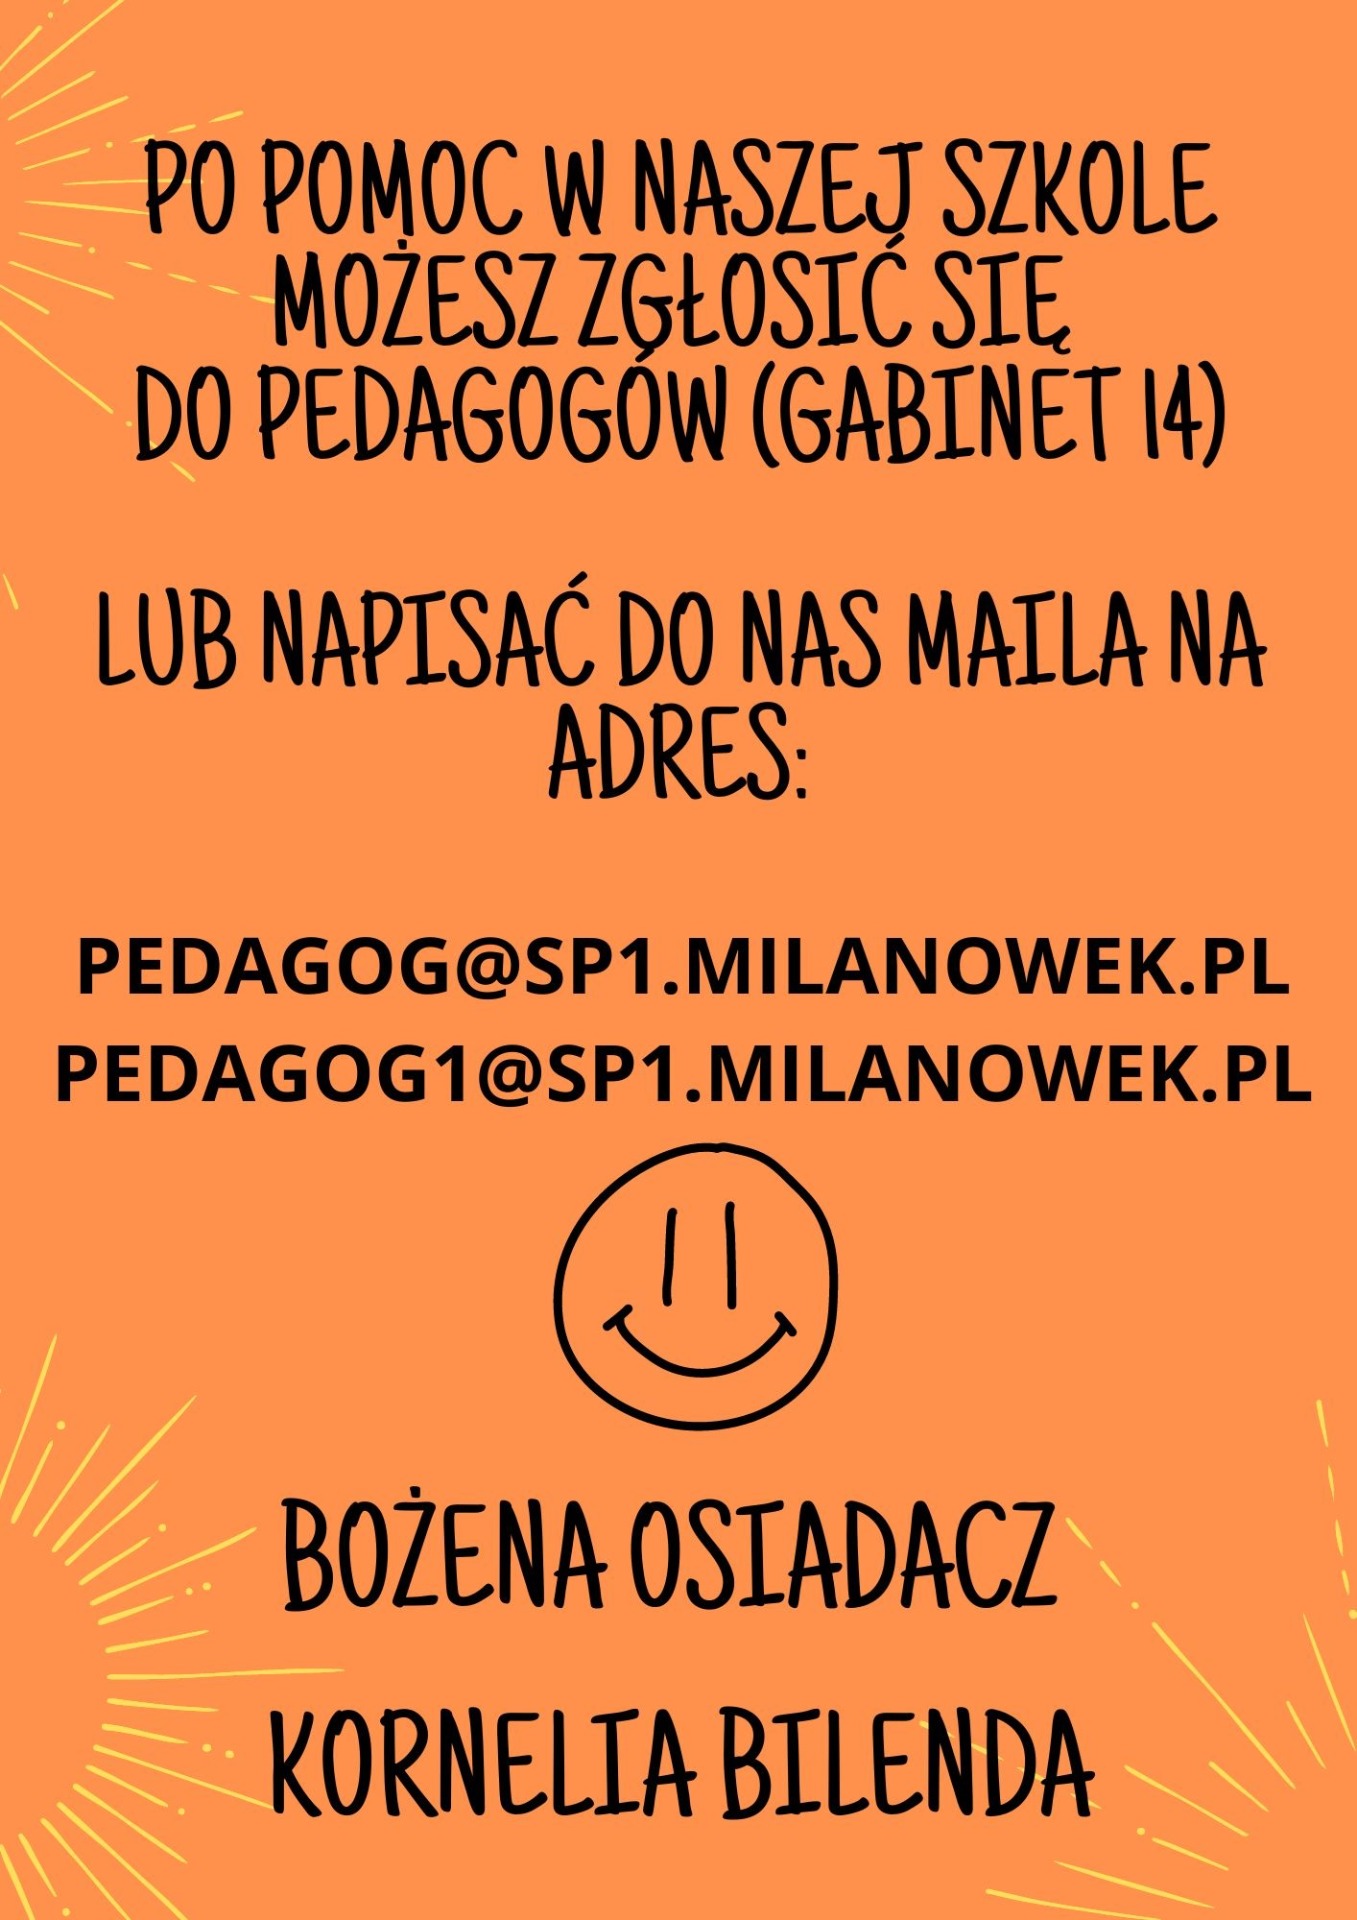 Plakat informacyjny w kolorze pomarańczowym z treścią: Po pomoc w naszej szkole możesz zgłosić się do pedagogów (gabinet 14) lub napisać do nas maila na adres: 
pedagog@sp1.milanowek.pl  Bożena Osiadacz
pedagog1@sp1.milanowek.pl Kornelia Bilenda

